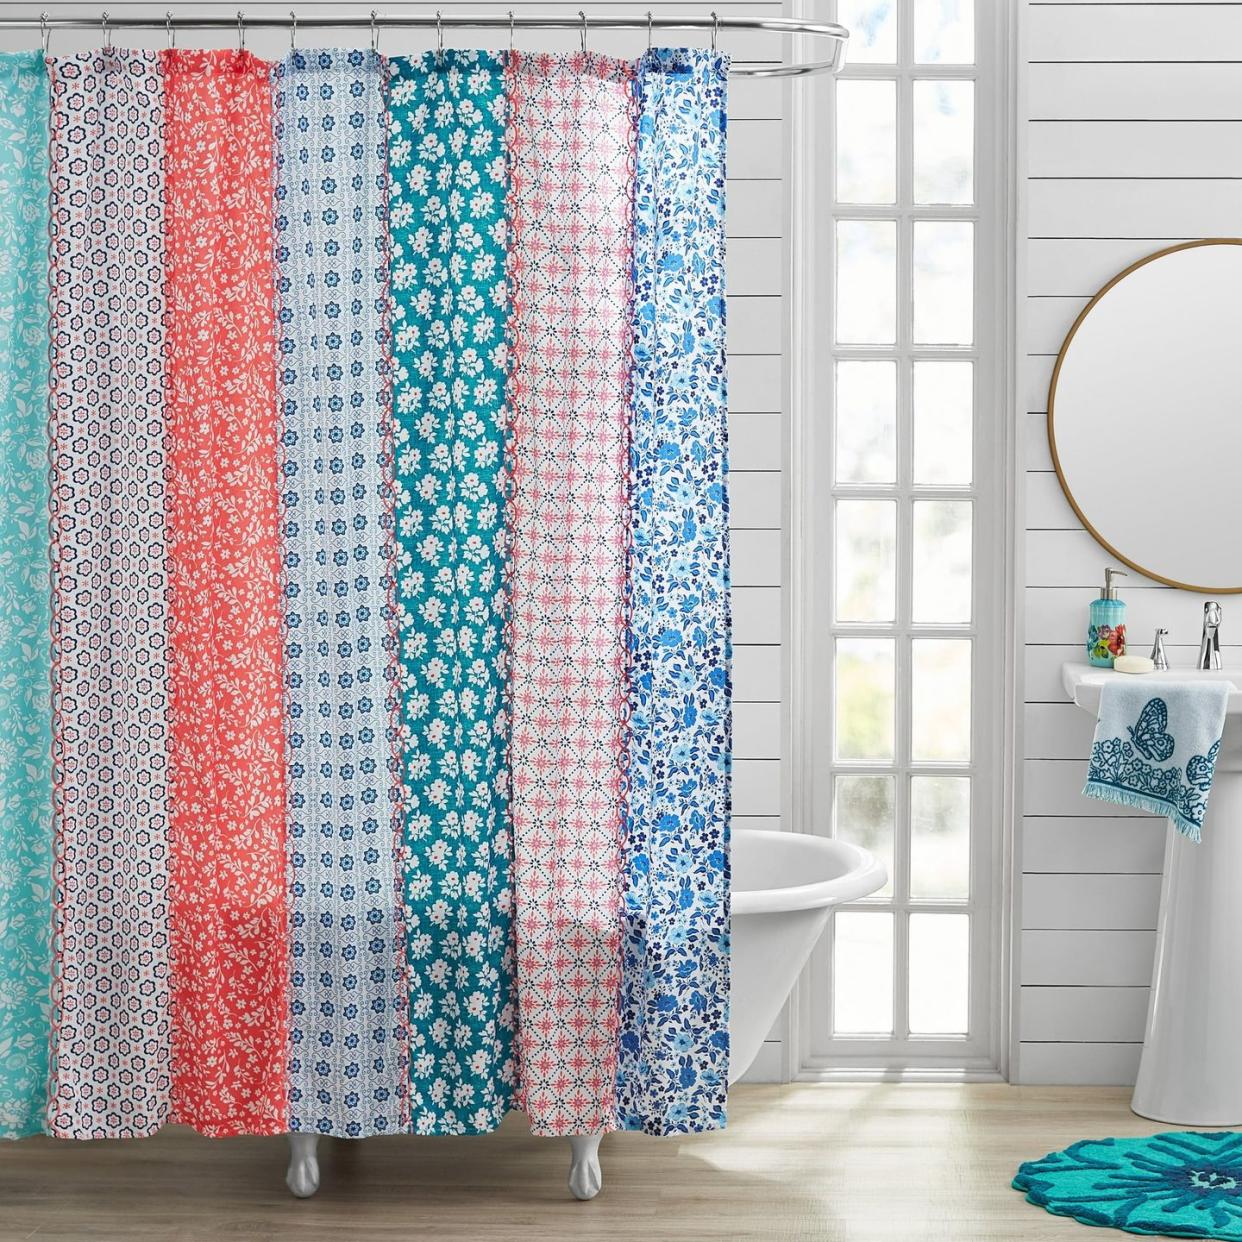 farmhouse bathroom ideas shower curtain